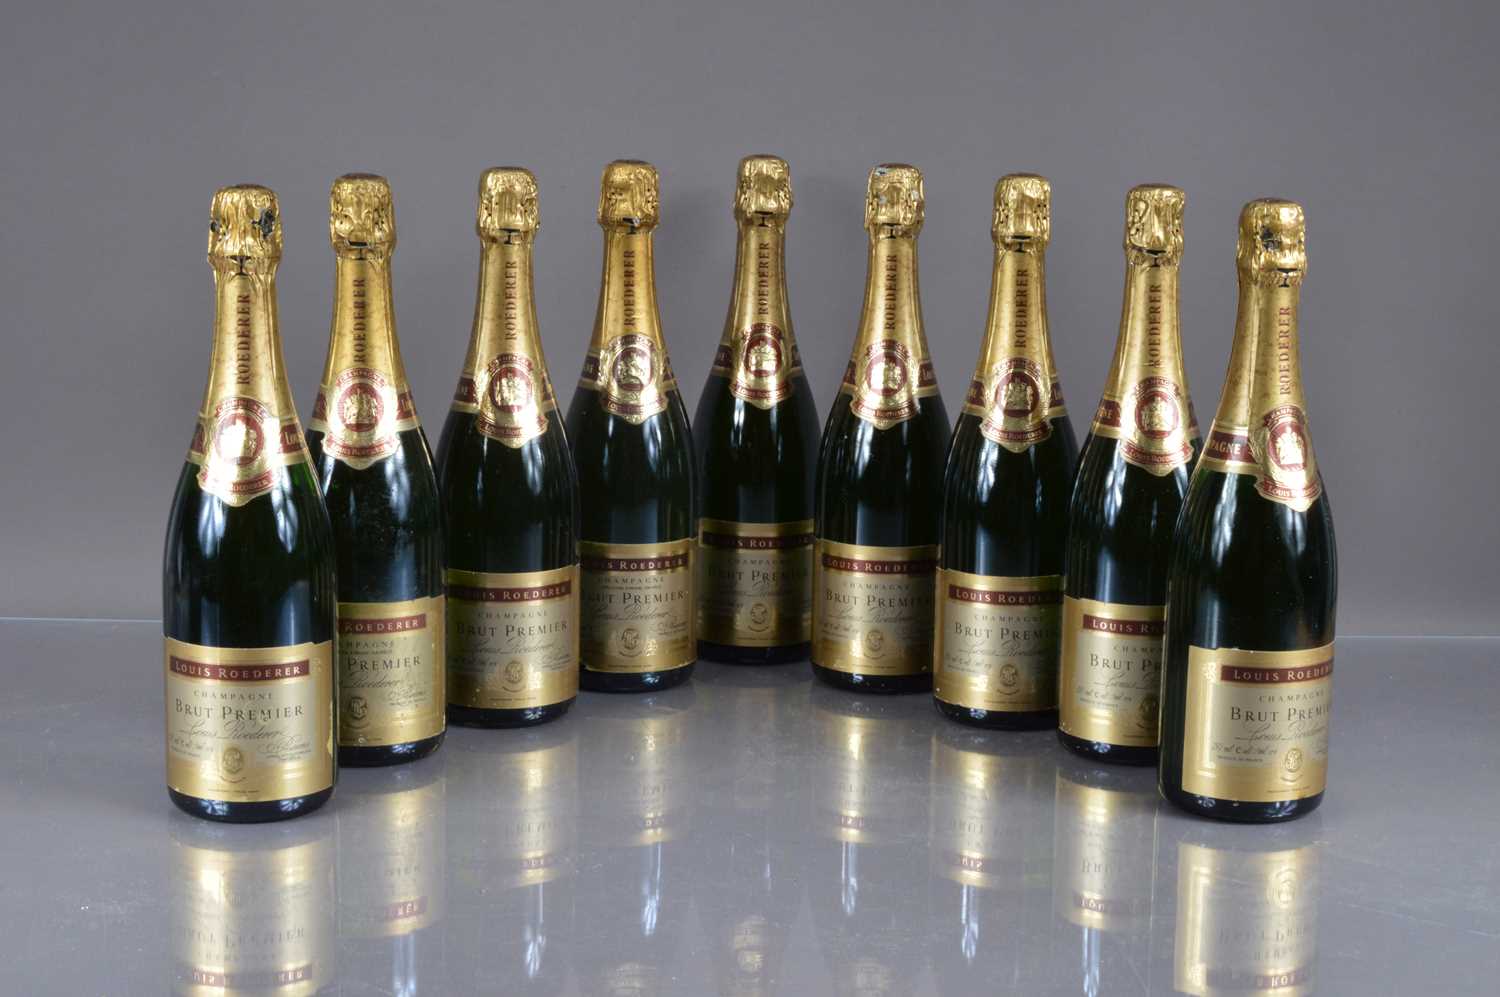 Lot 2 - Nine bottles of Louis Roederer 'Brut Premier' Champagne